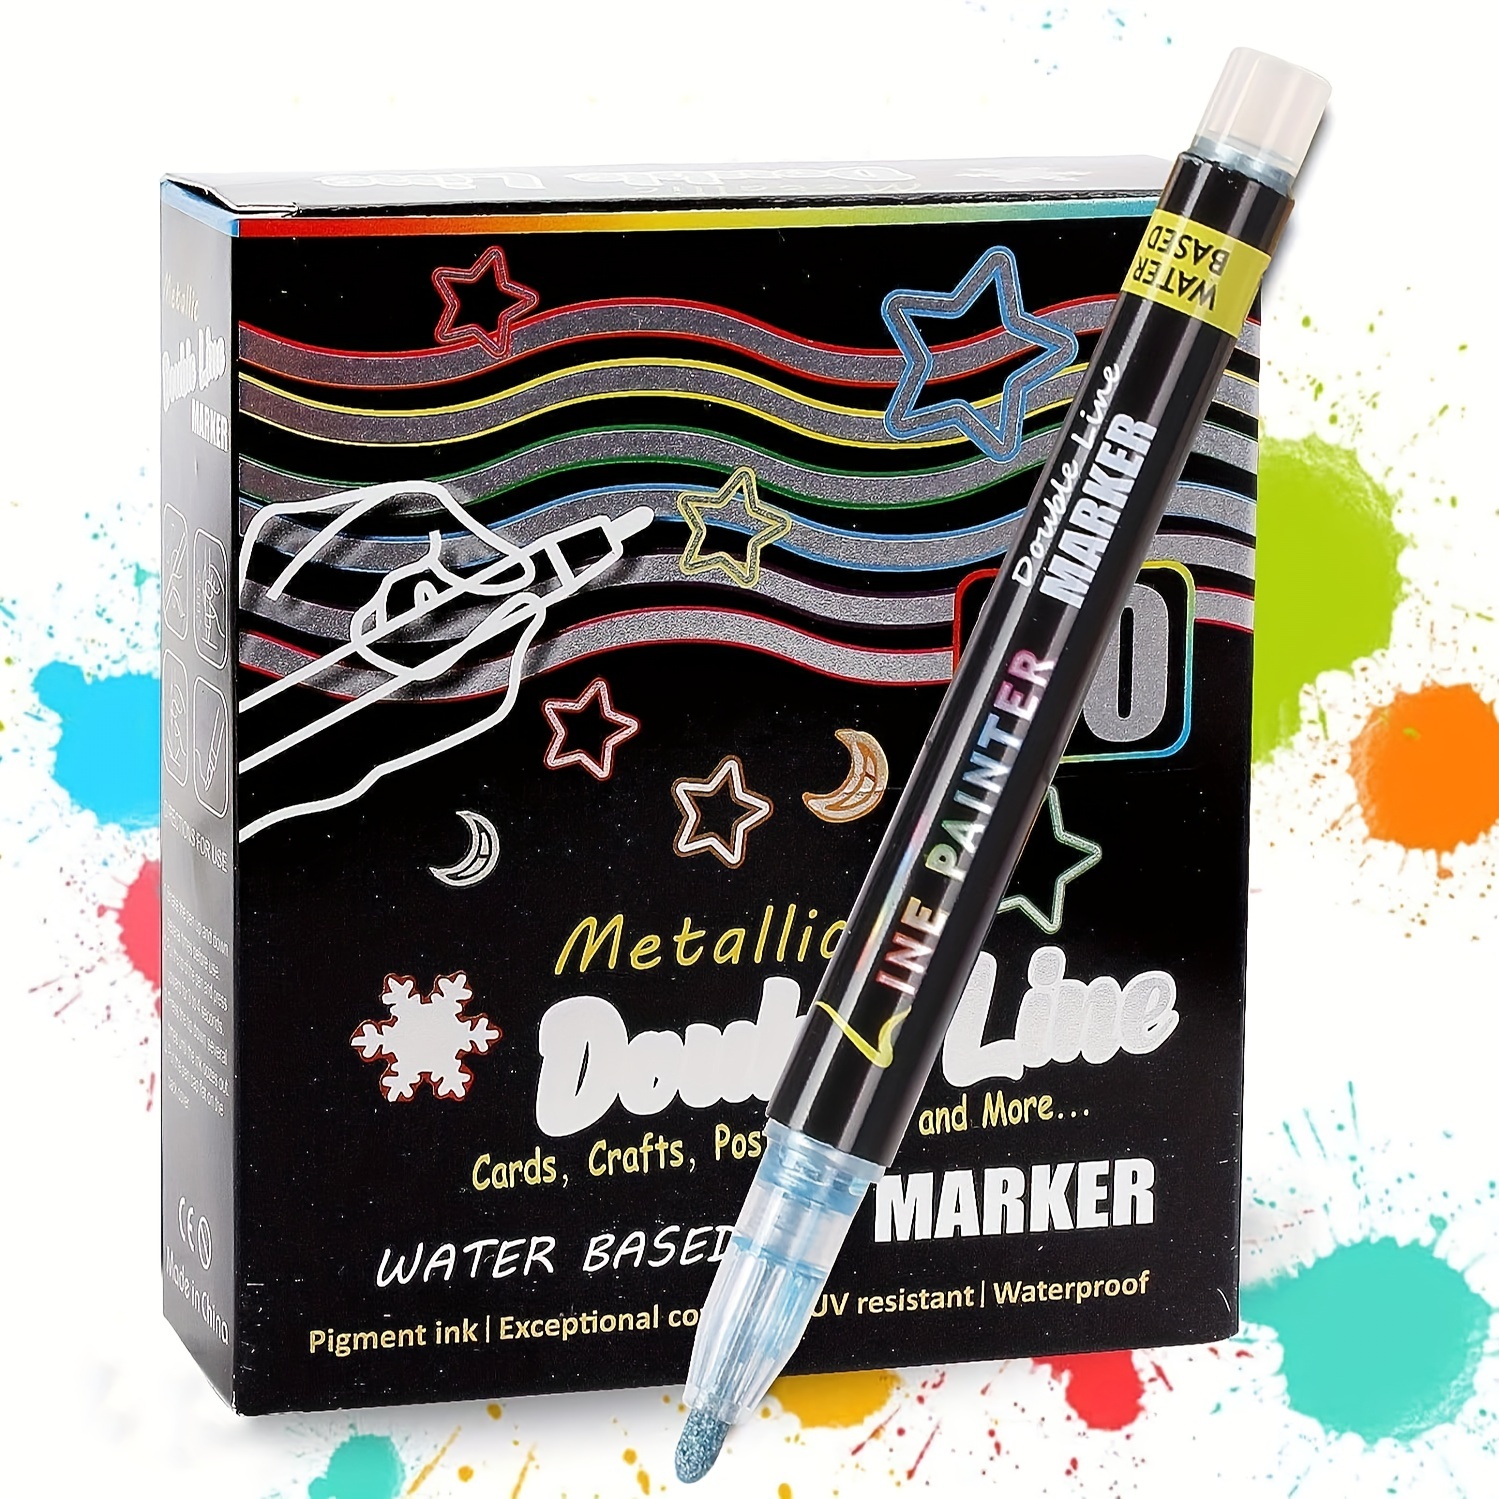 ILS  24 Colors Inten-ls: Doodle Shimmer Markers Set Super Squiggles  Outline For Arts Crafts